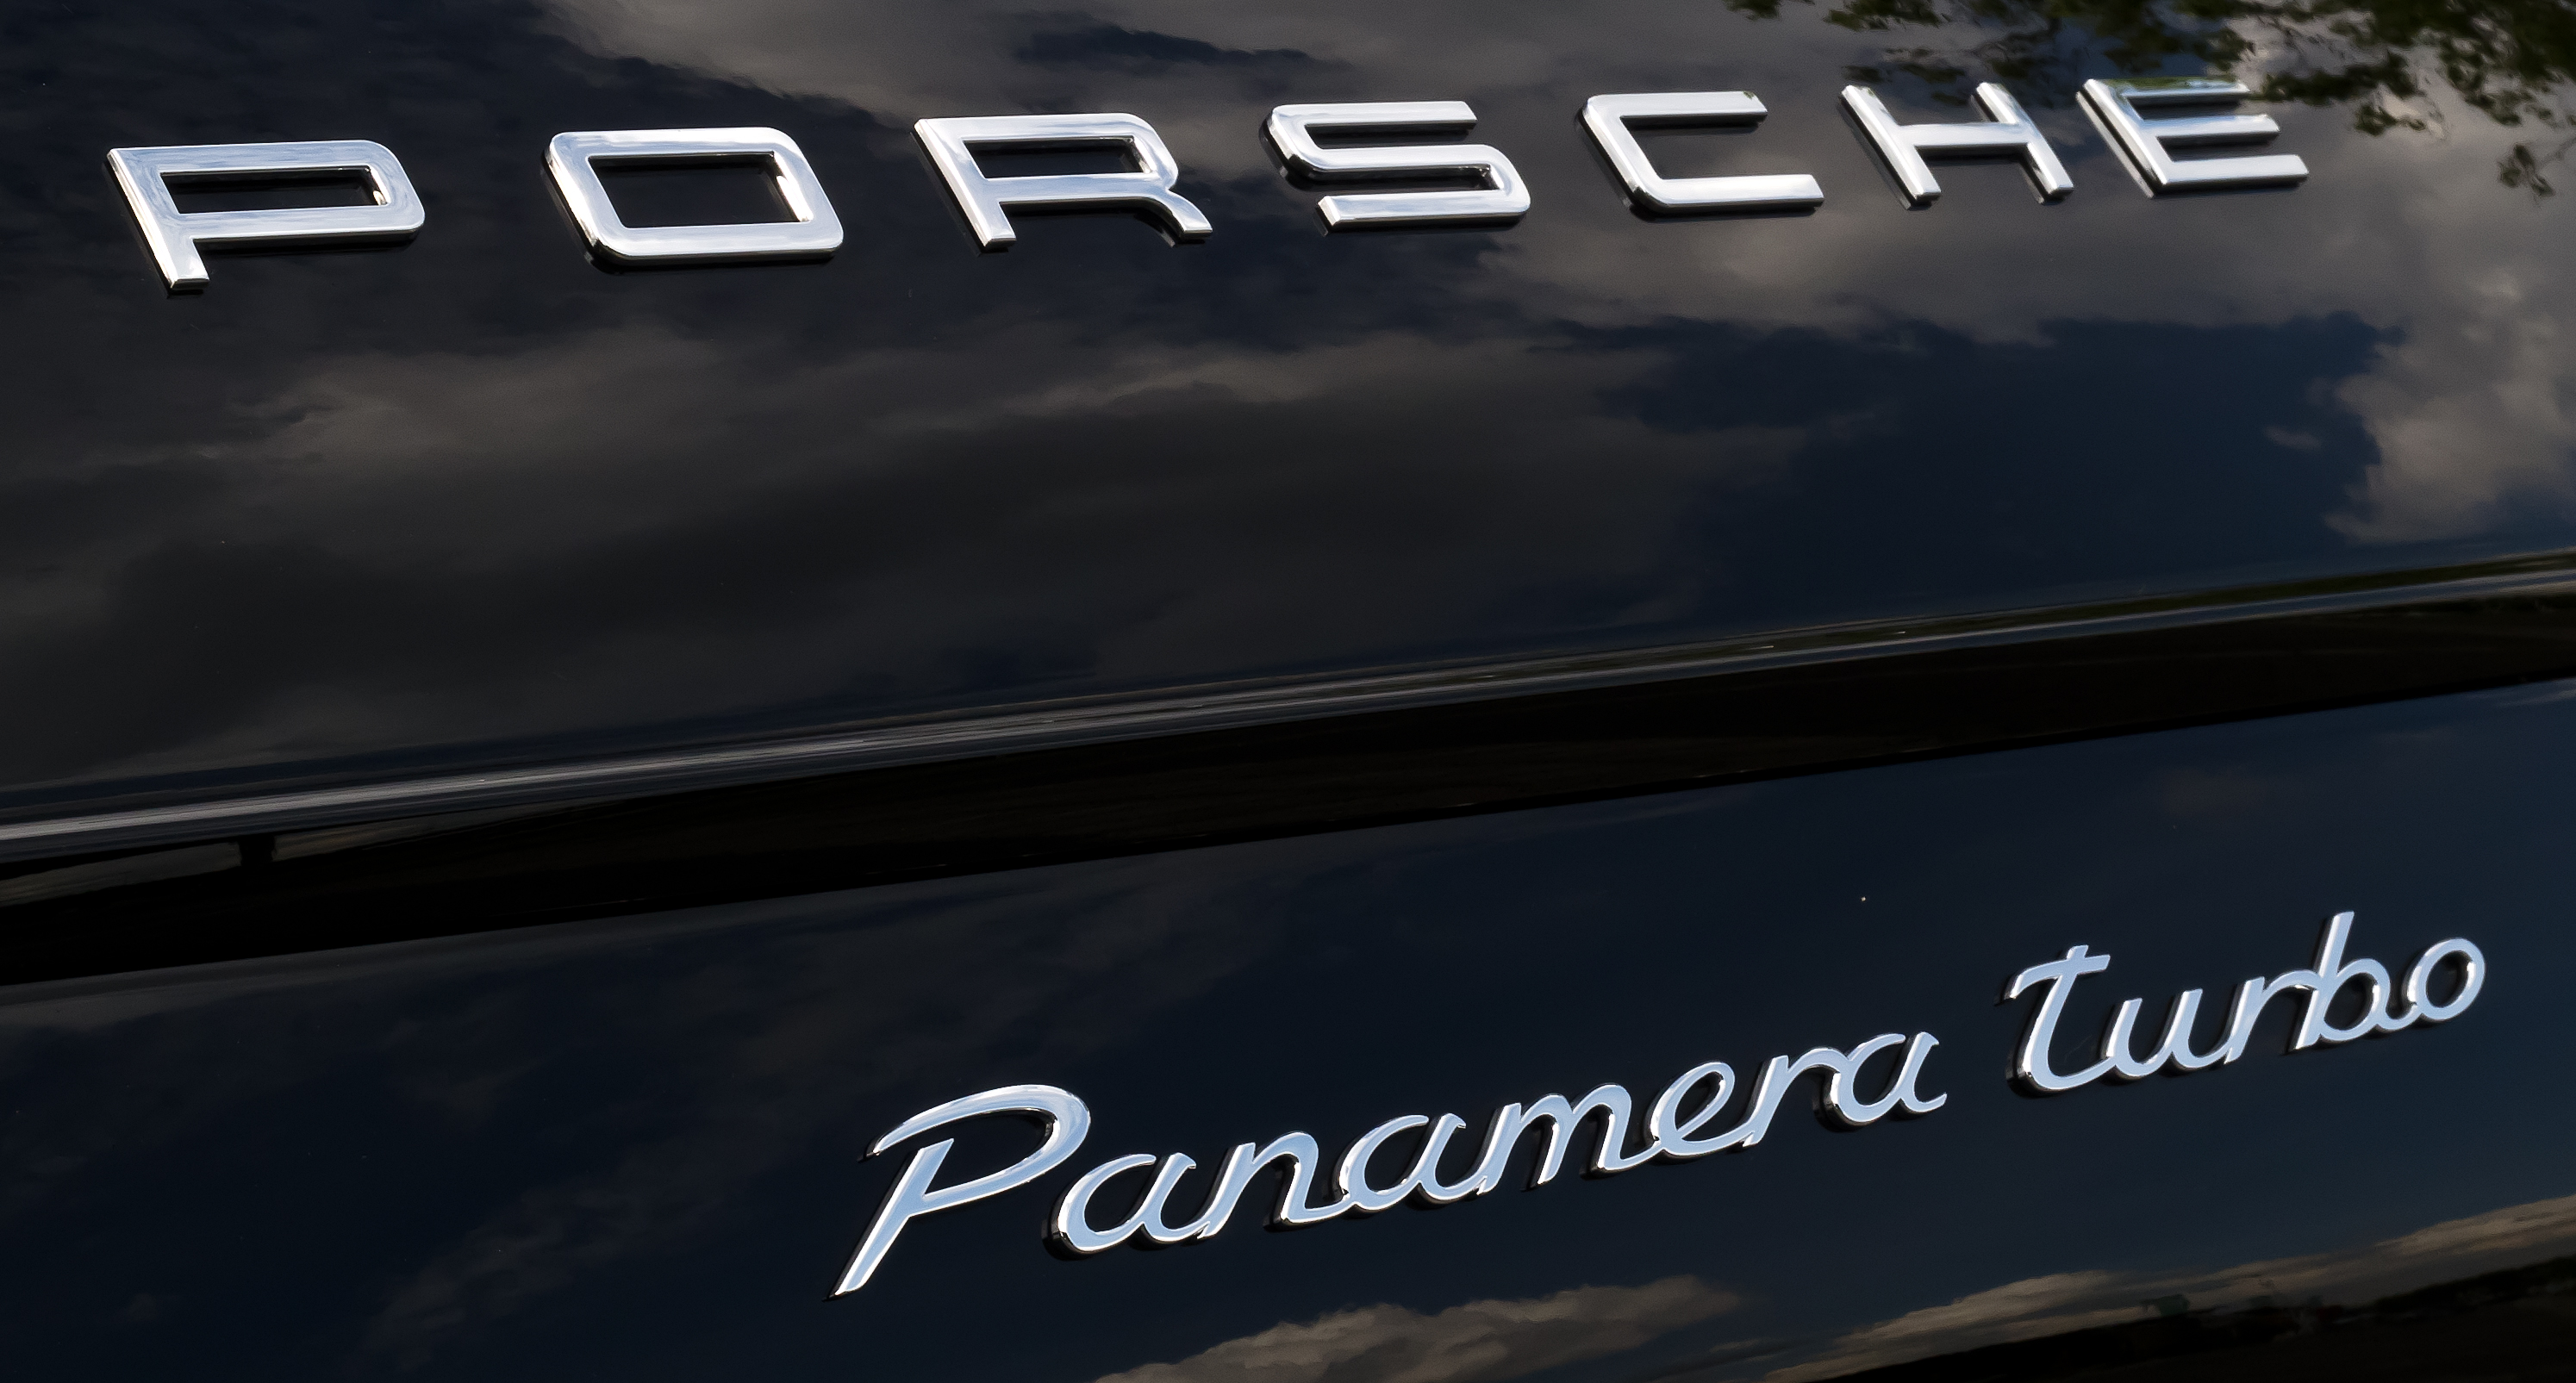 Porsche_Panamera_Turbo_%28970%29_%E2%80%93_Schriftzug%2C_18._Juli_2012%2C_D%C3%BCsseldorf.jpg